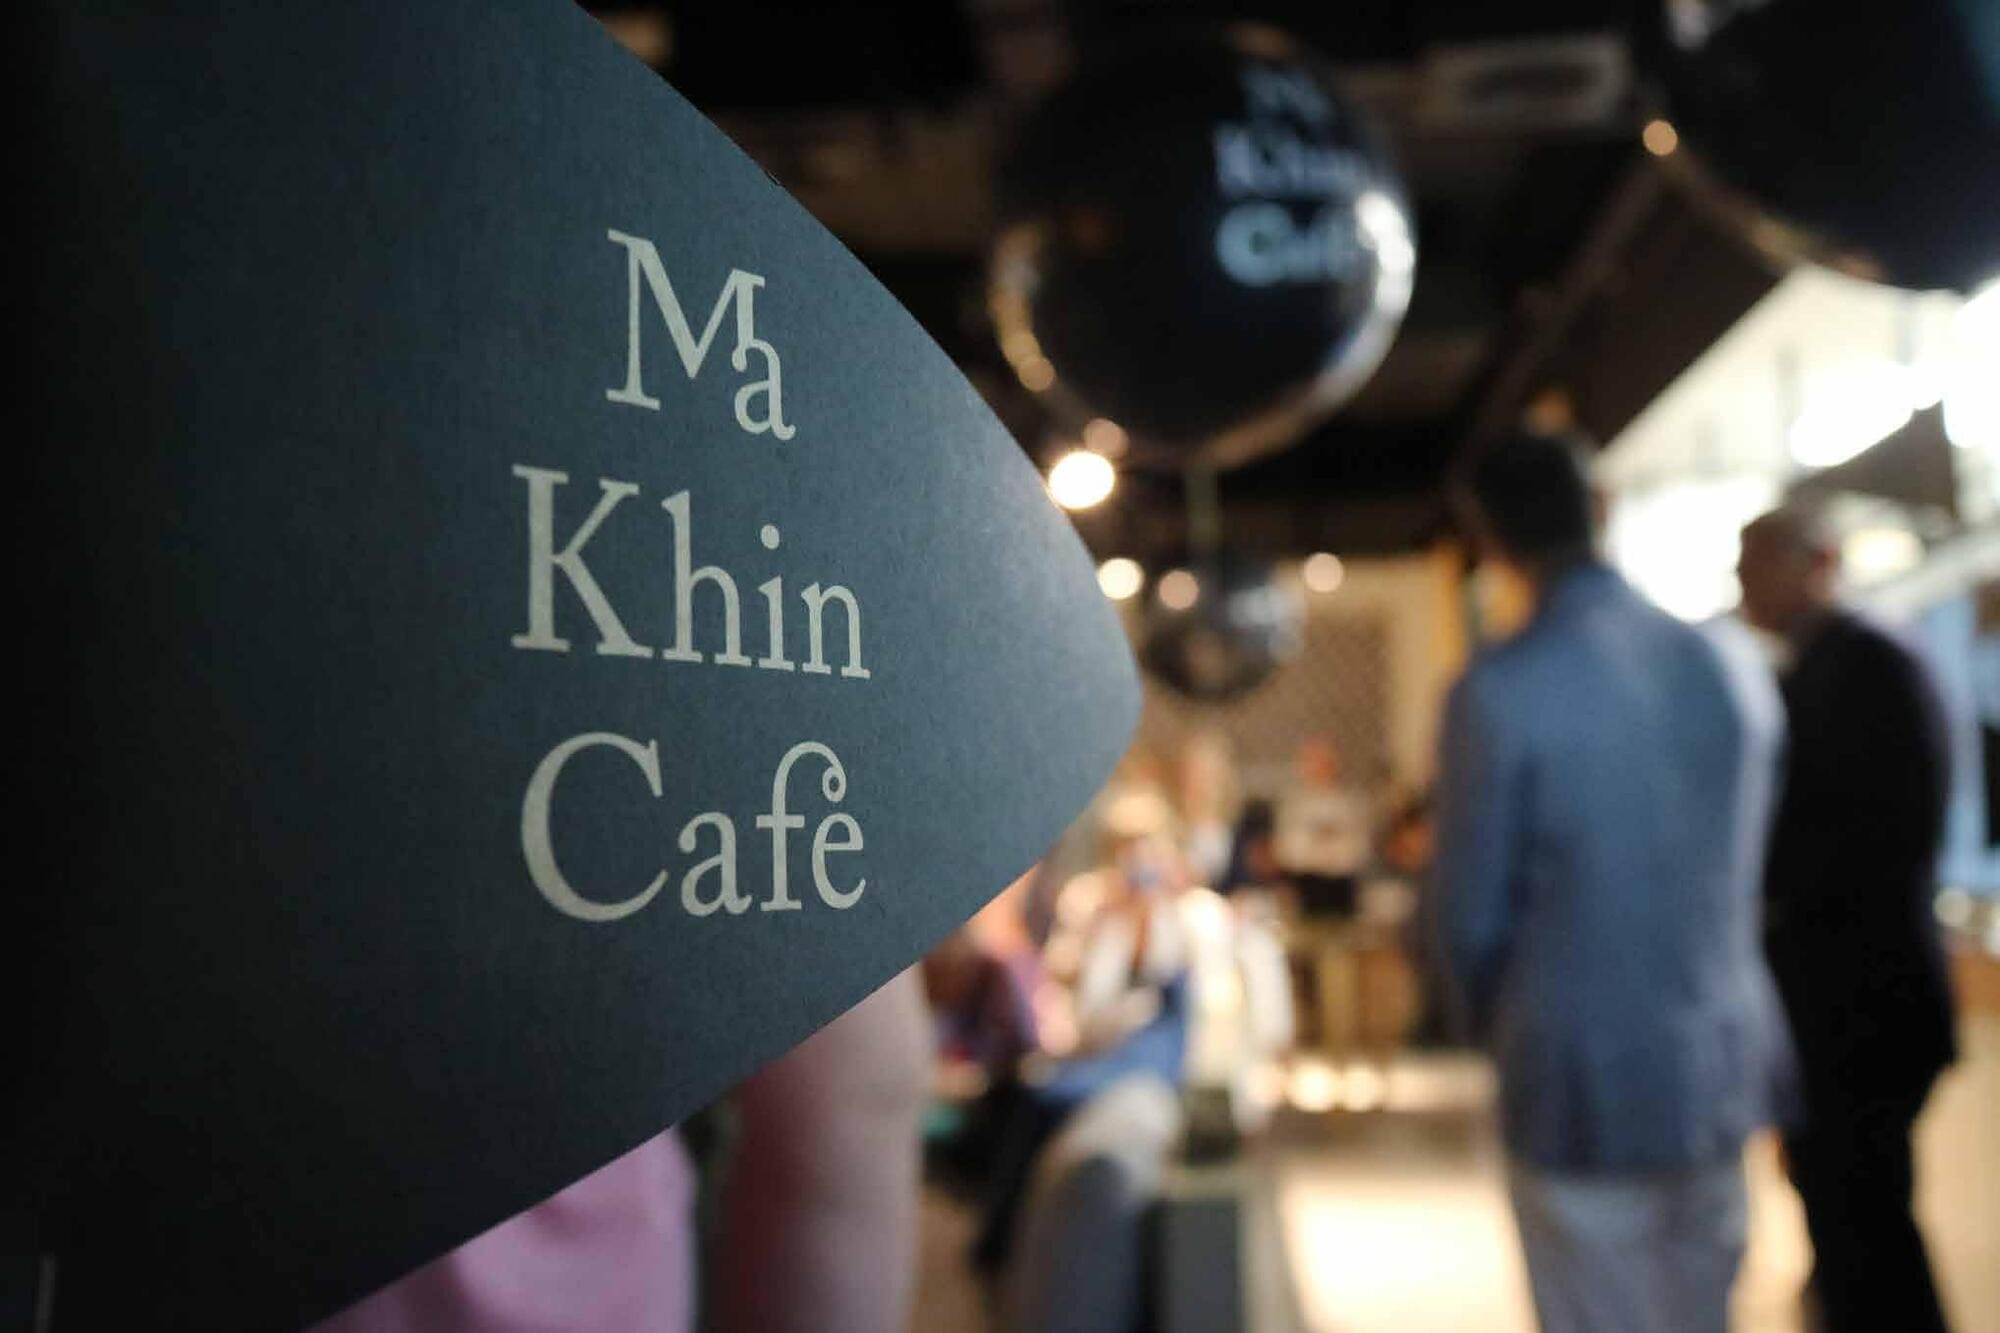 Nuevo horario Ma Khin Café restaurante de comida asiática en Valencia